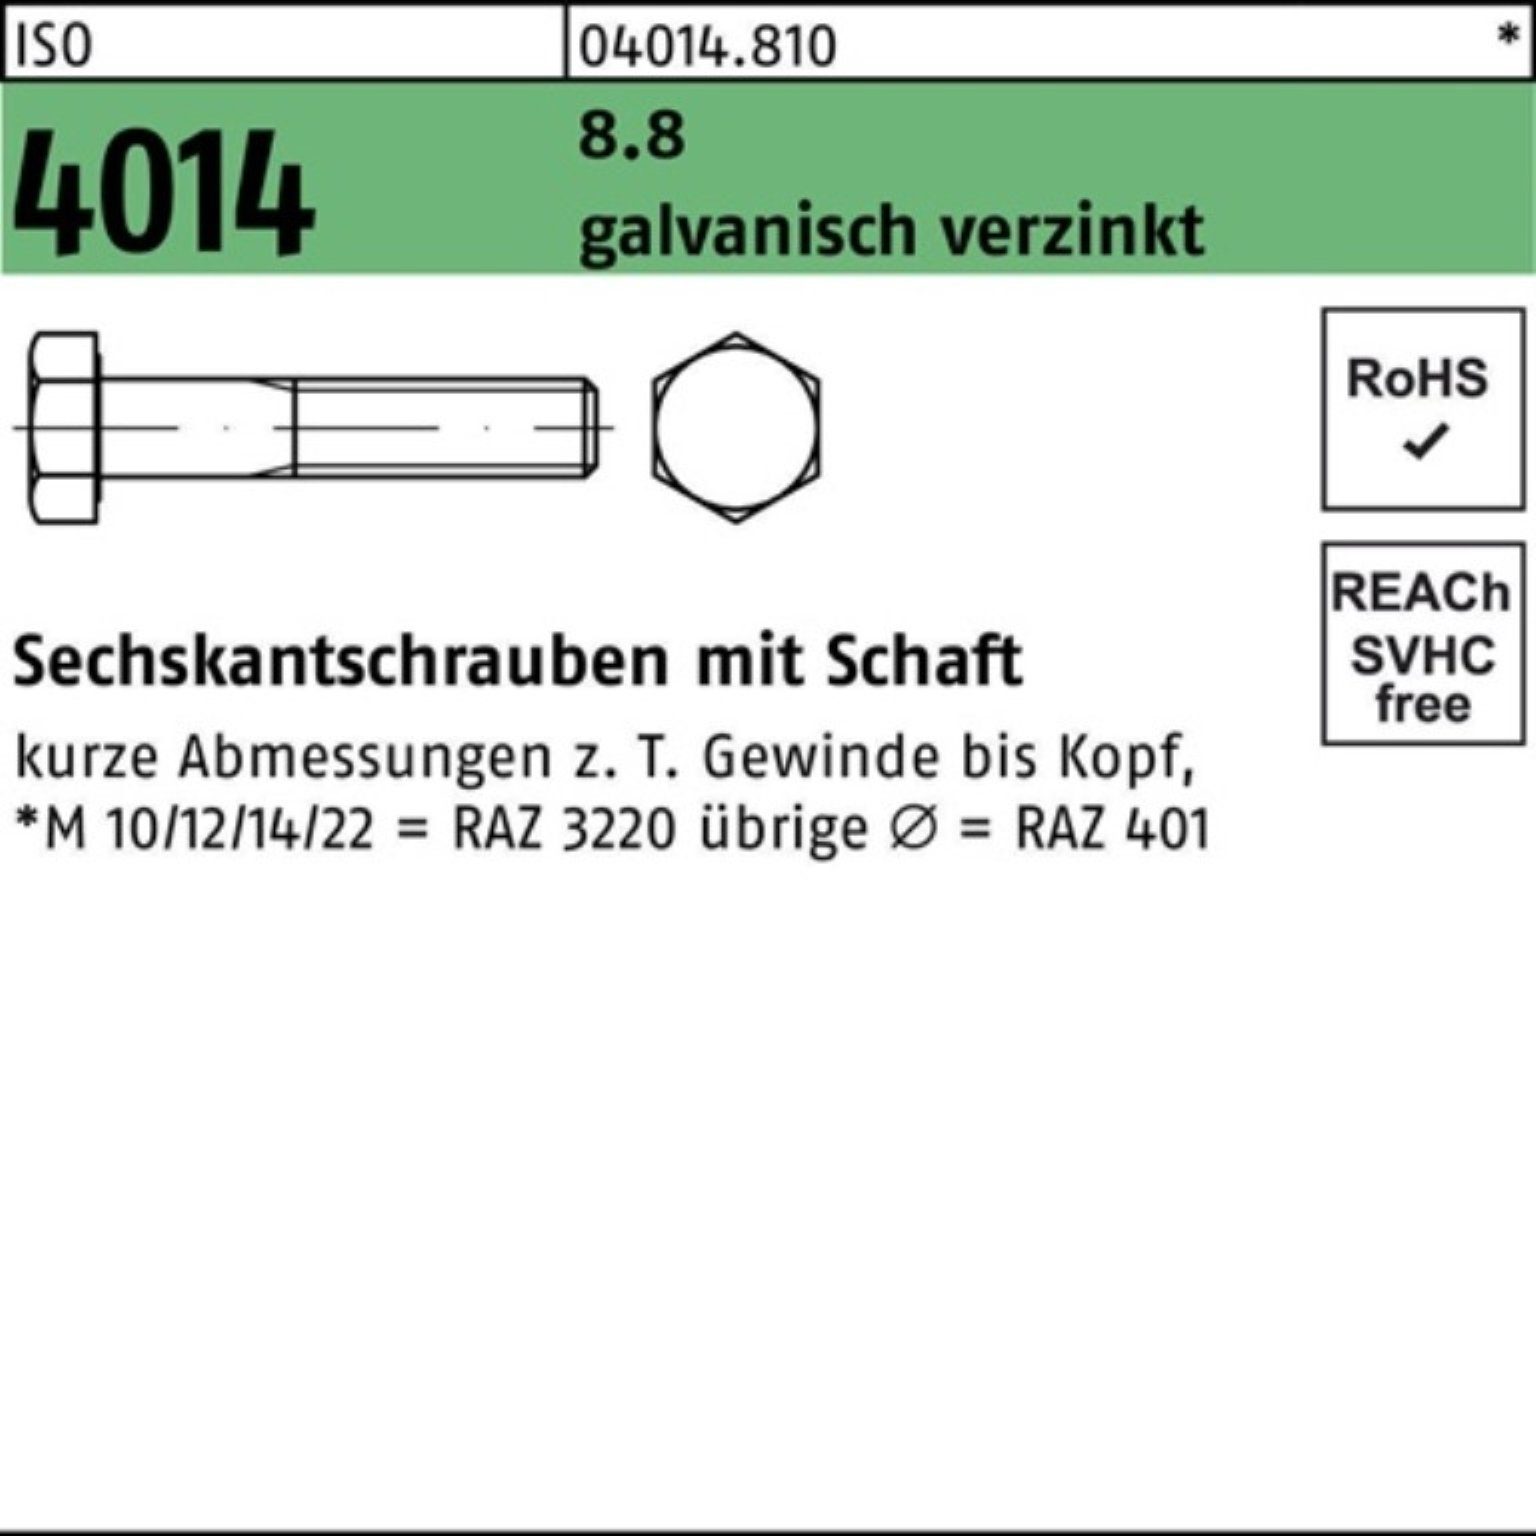 Schaft Sechskantschraube 100er 190 8.8 ISO Sechskantschraube galv.verz. M39x 4014 Pack Bufab 1